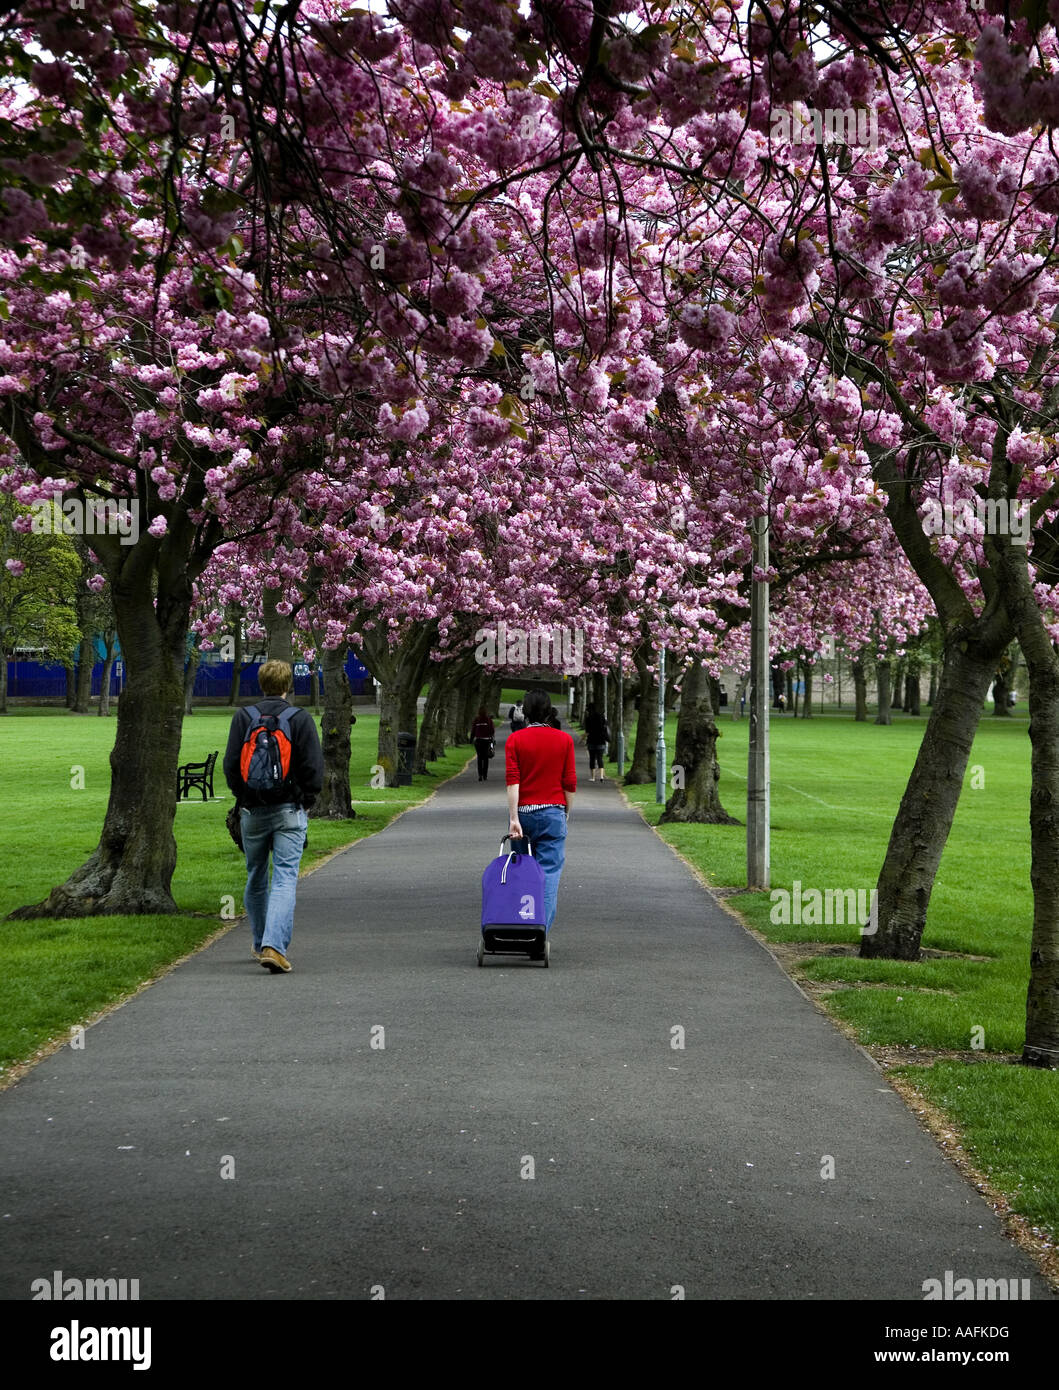 Los dos peatones uno con equipaje caminar bajo los árboles de cerezo rosa a lo largo de un sendero en Edimburgo, Escocia, Europa Foto de stock